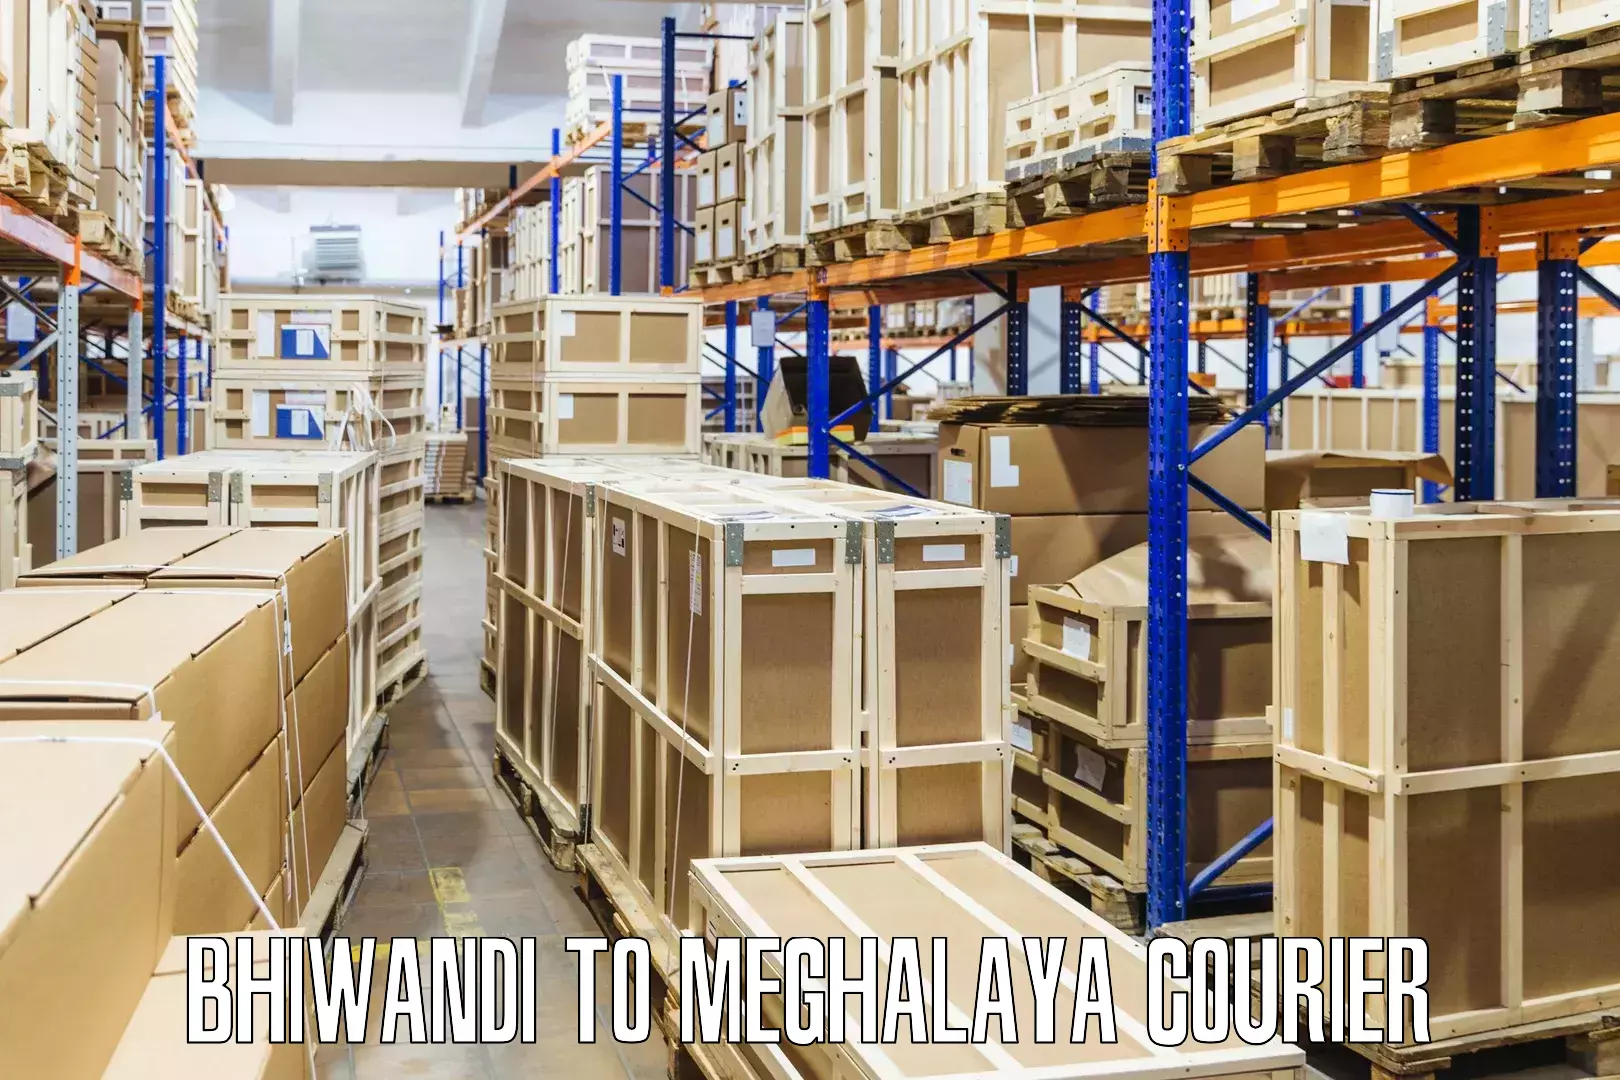 On-demand delivery Bhiwandi to Meghalaya